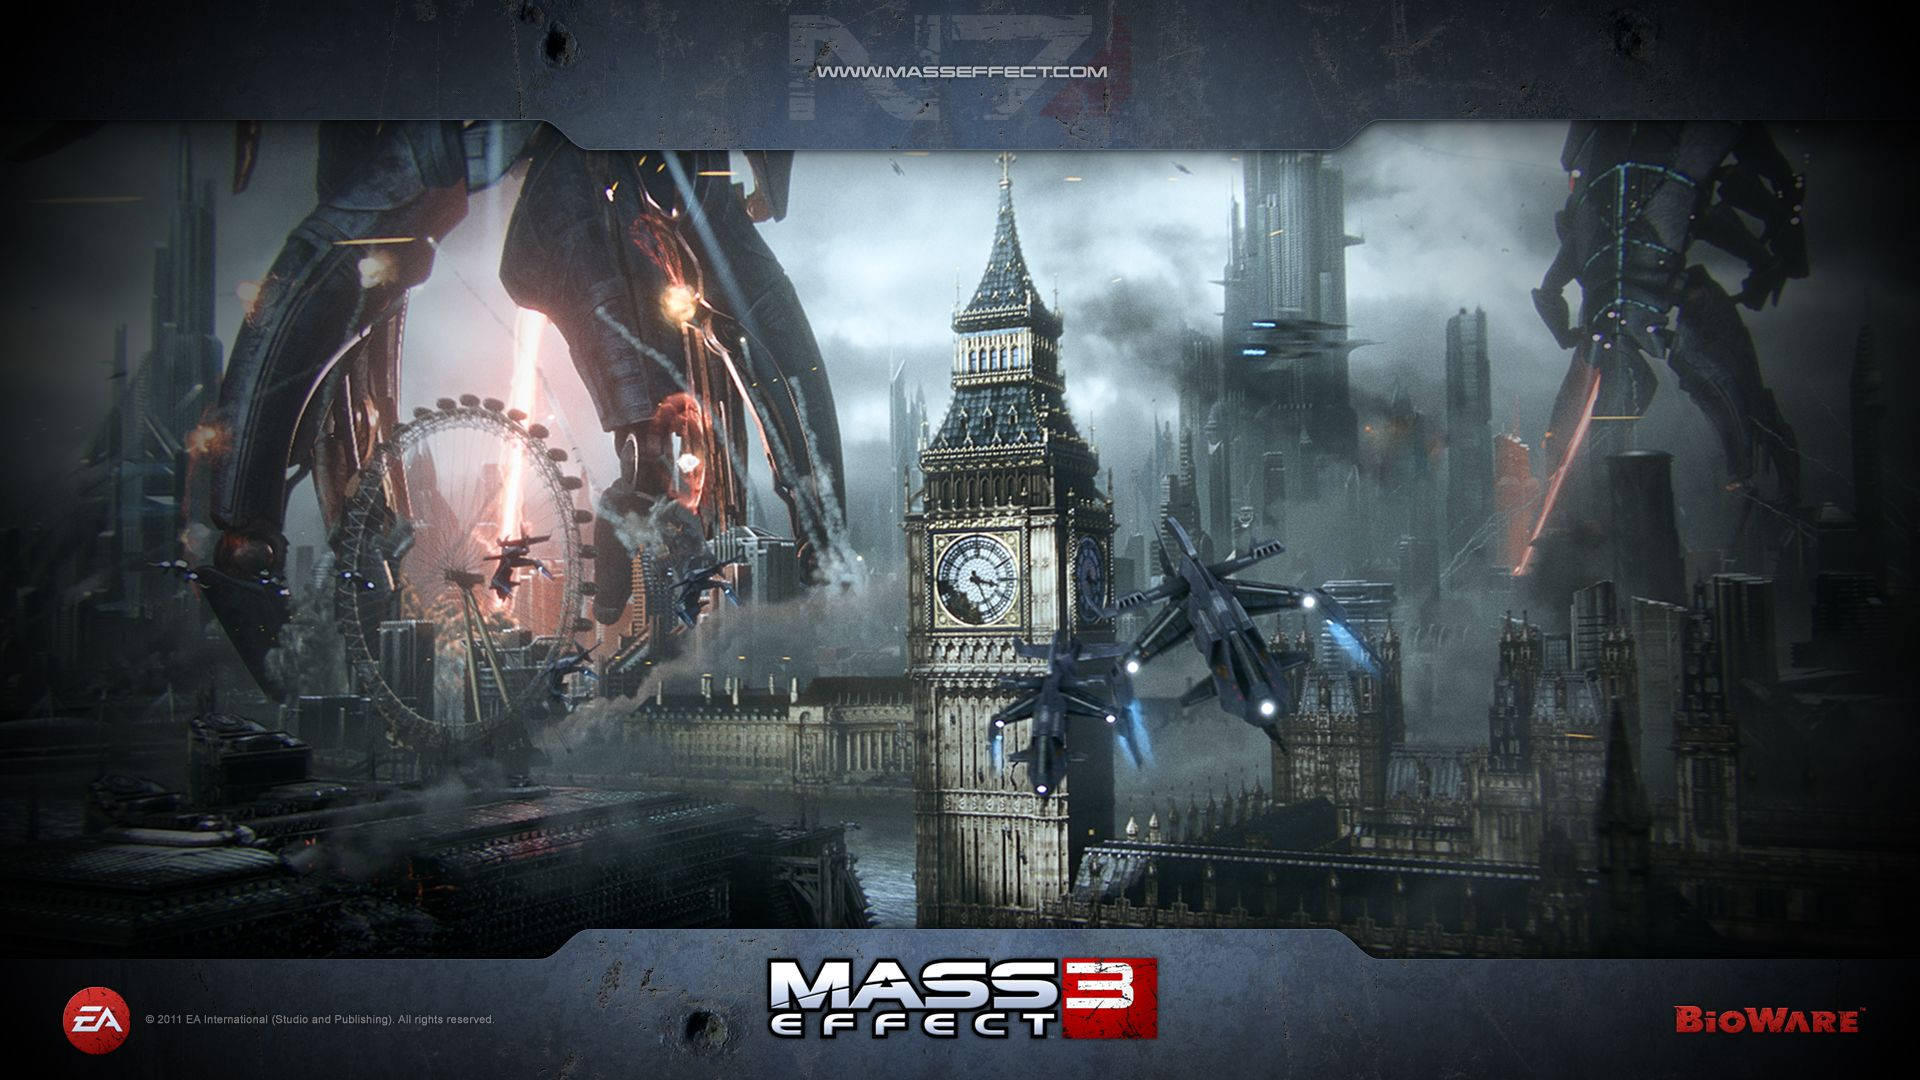 Bioware In Mass Effect 3 Background